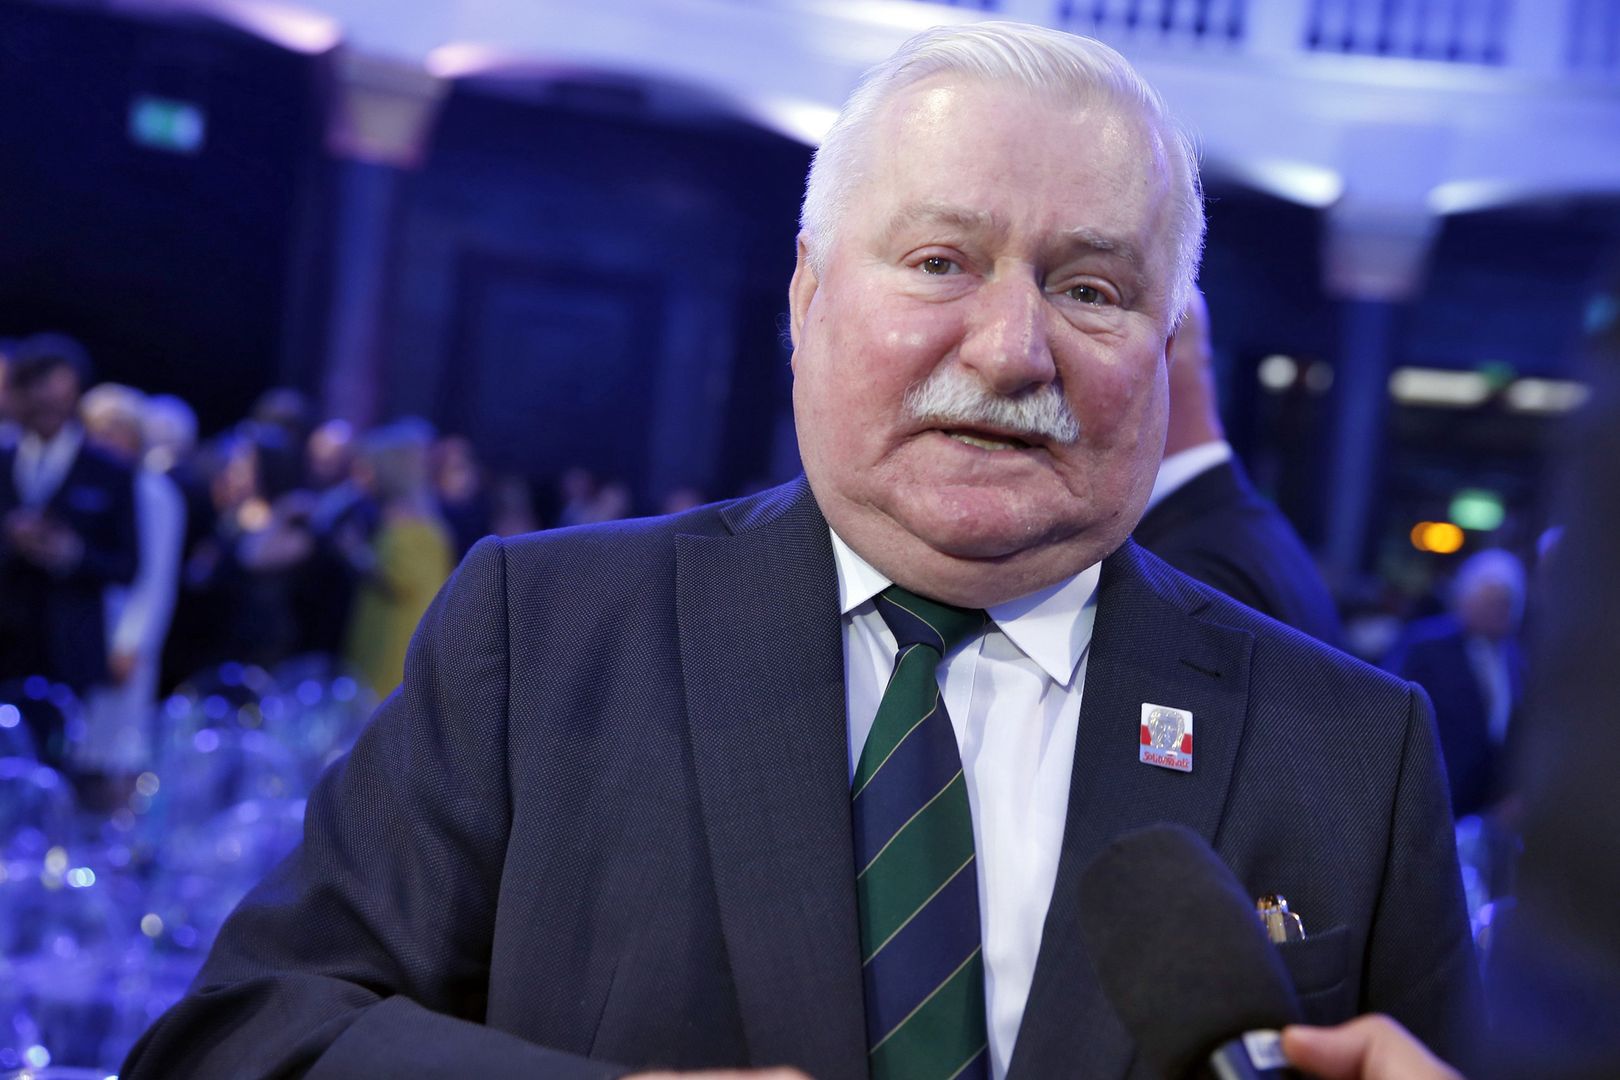 Ile emerytury dostaje Lech Wałęsa? Starczy nie tylko na waciki